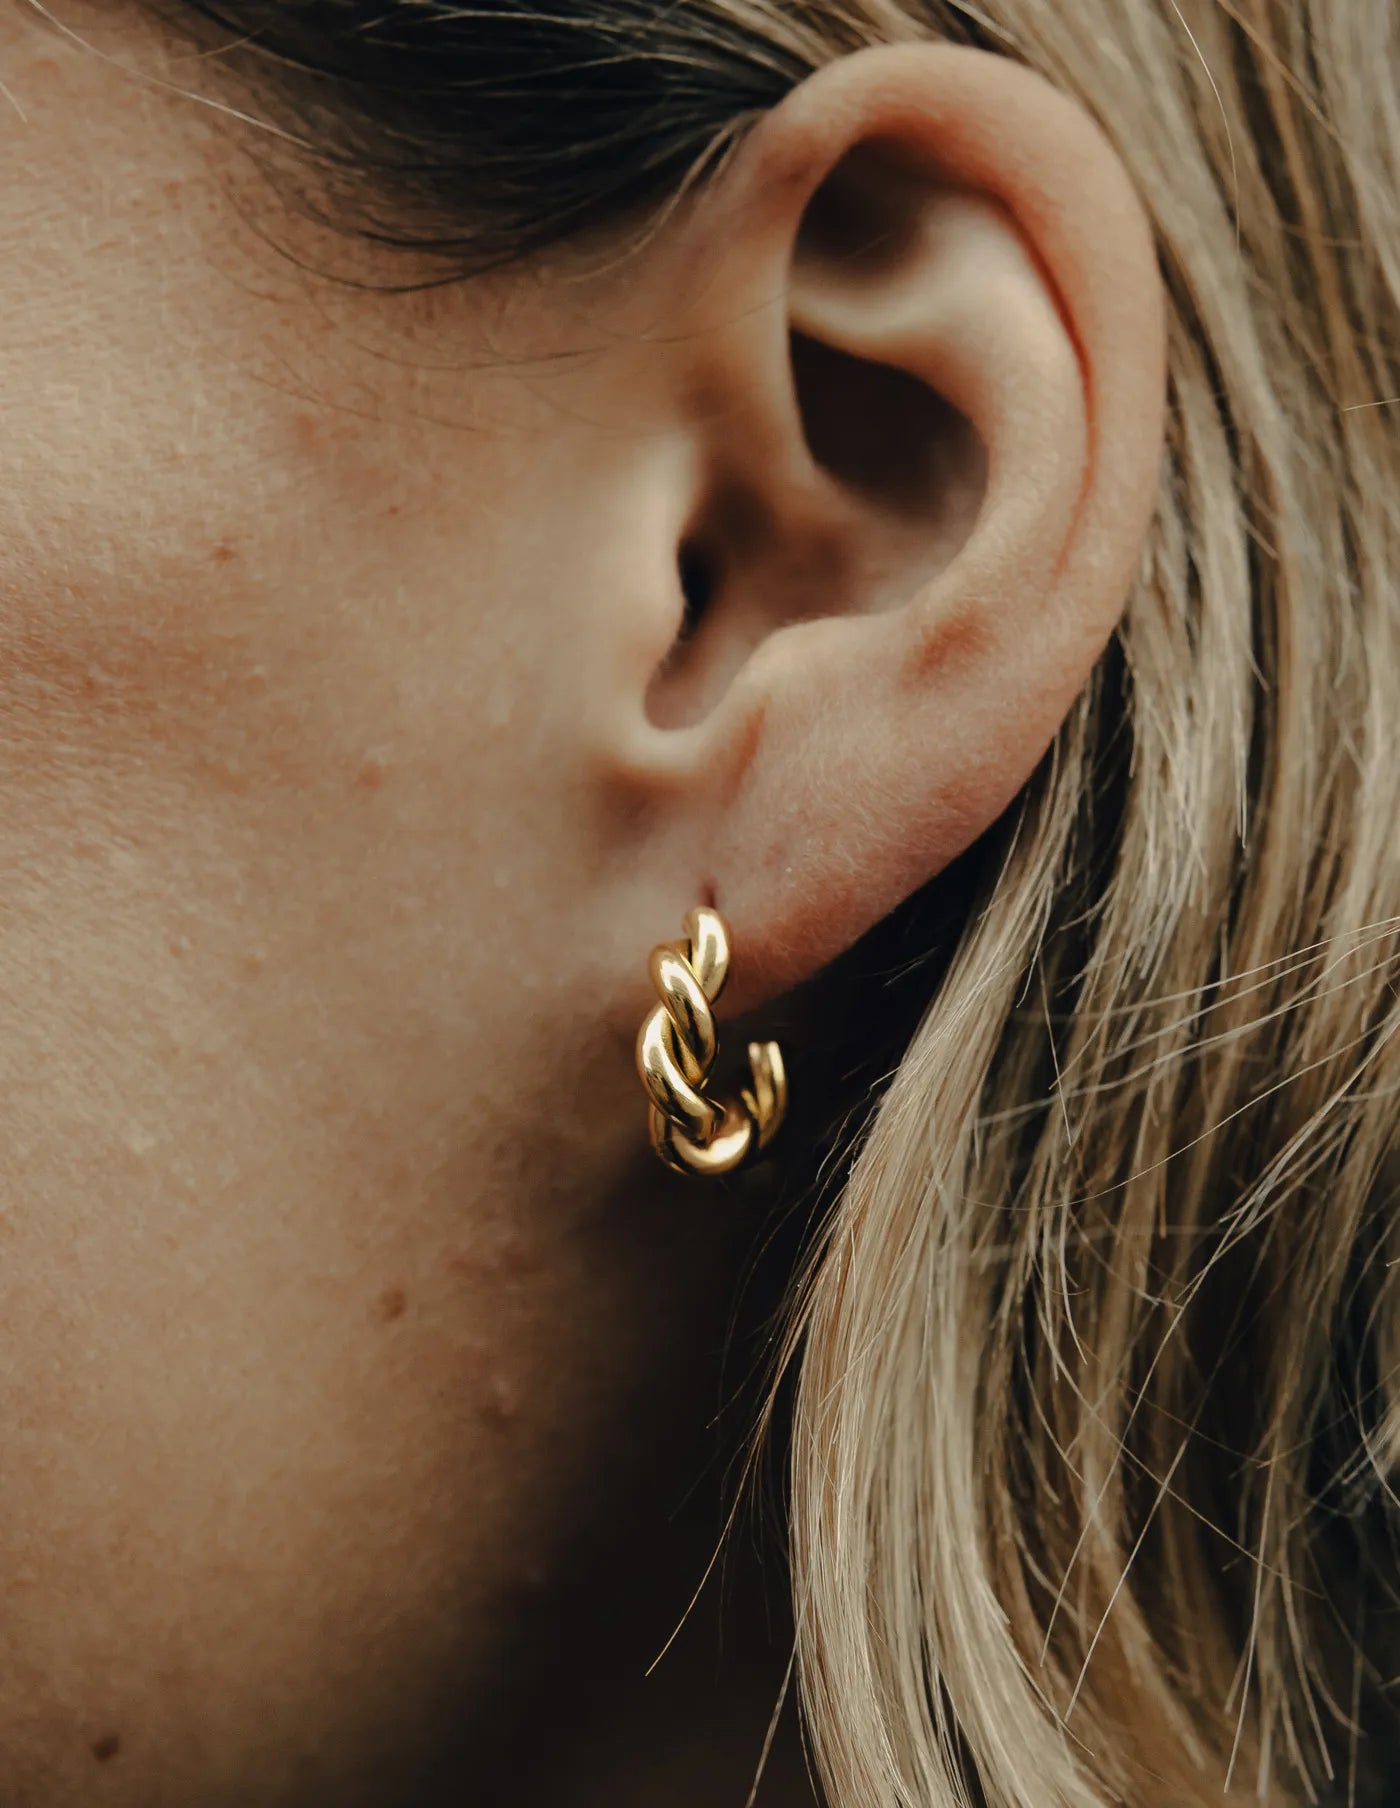 Gold Ridge Twist Hoops Earrings